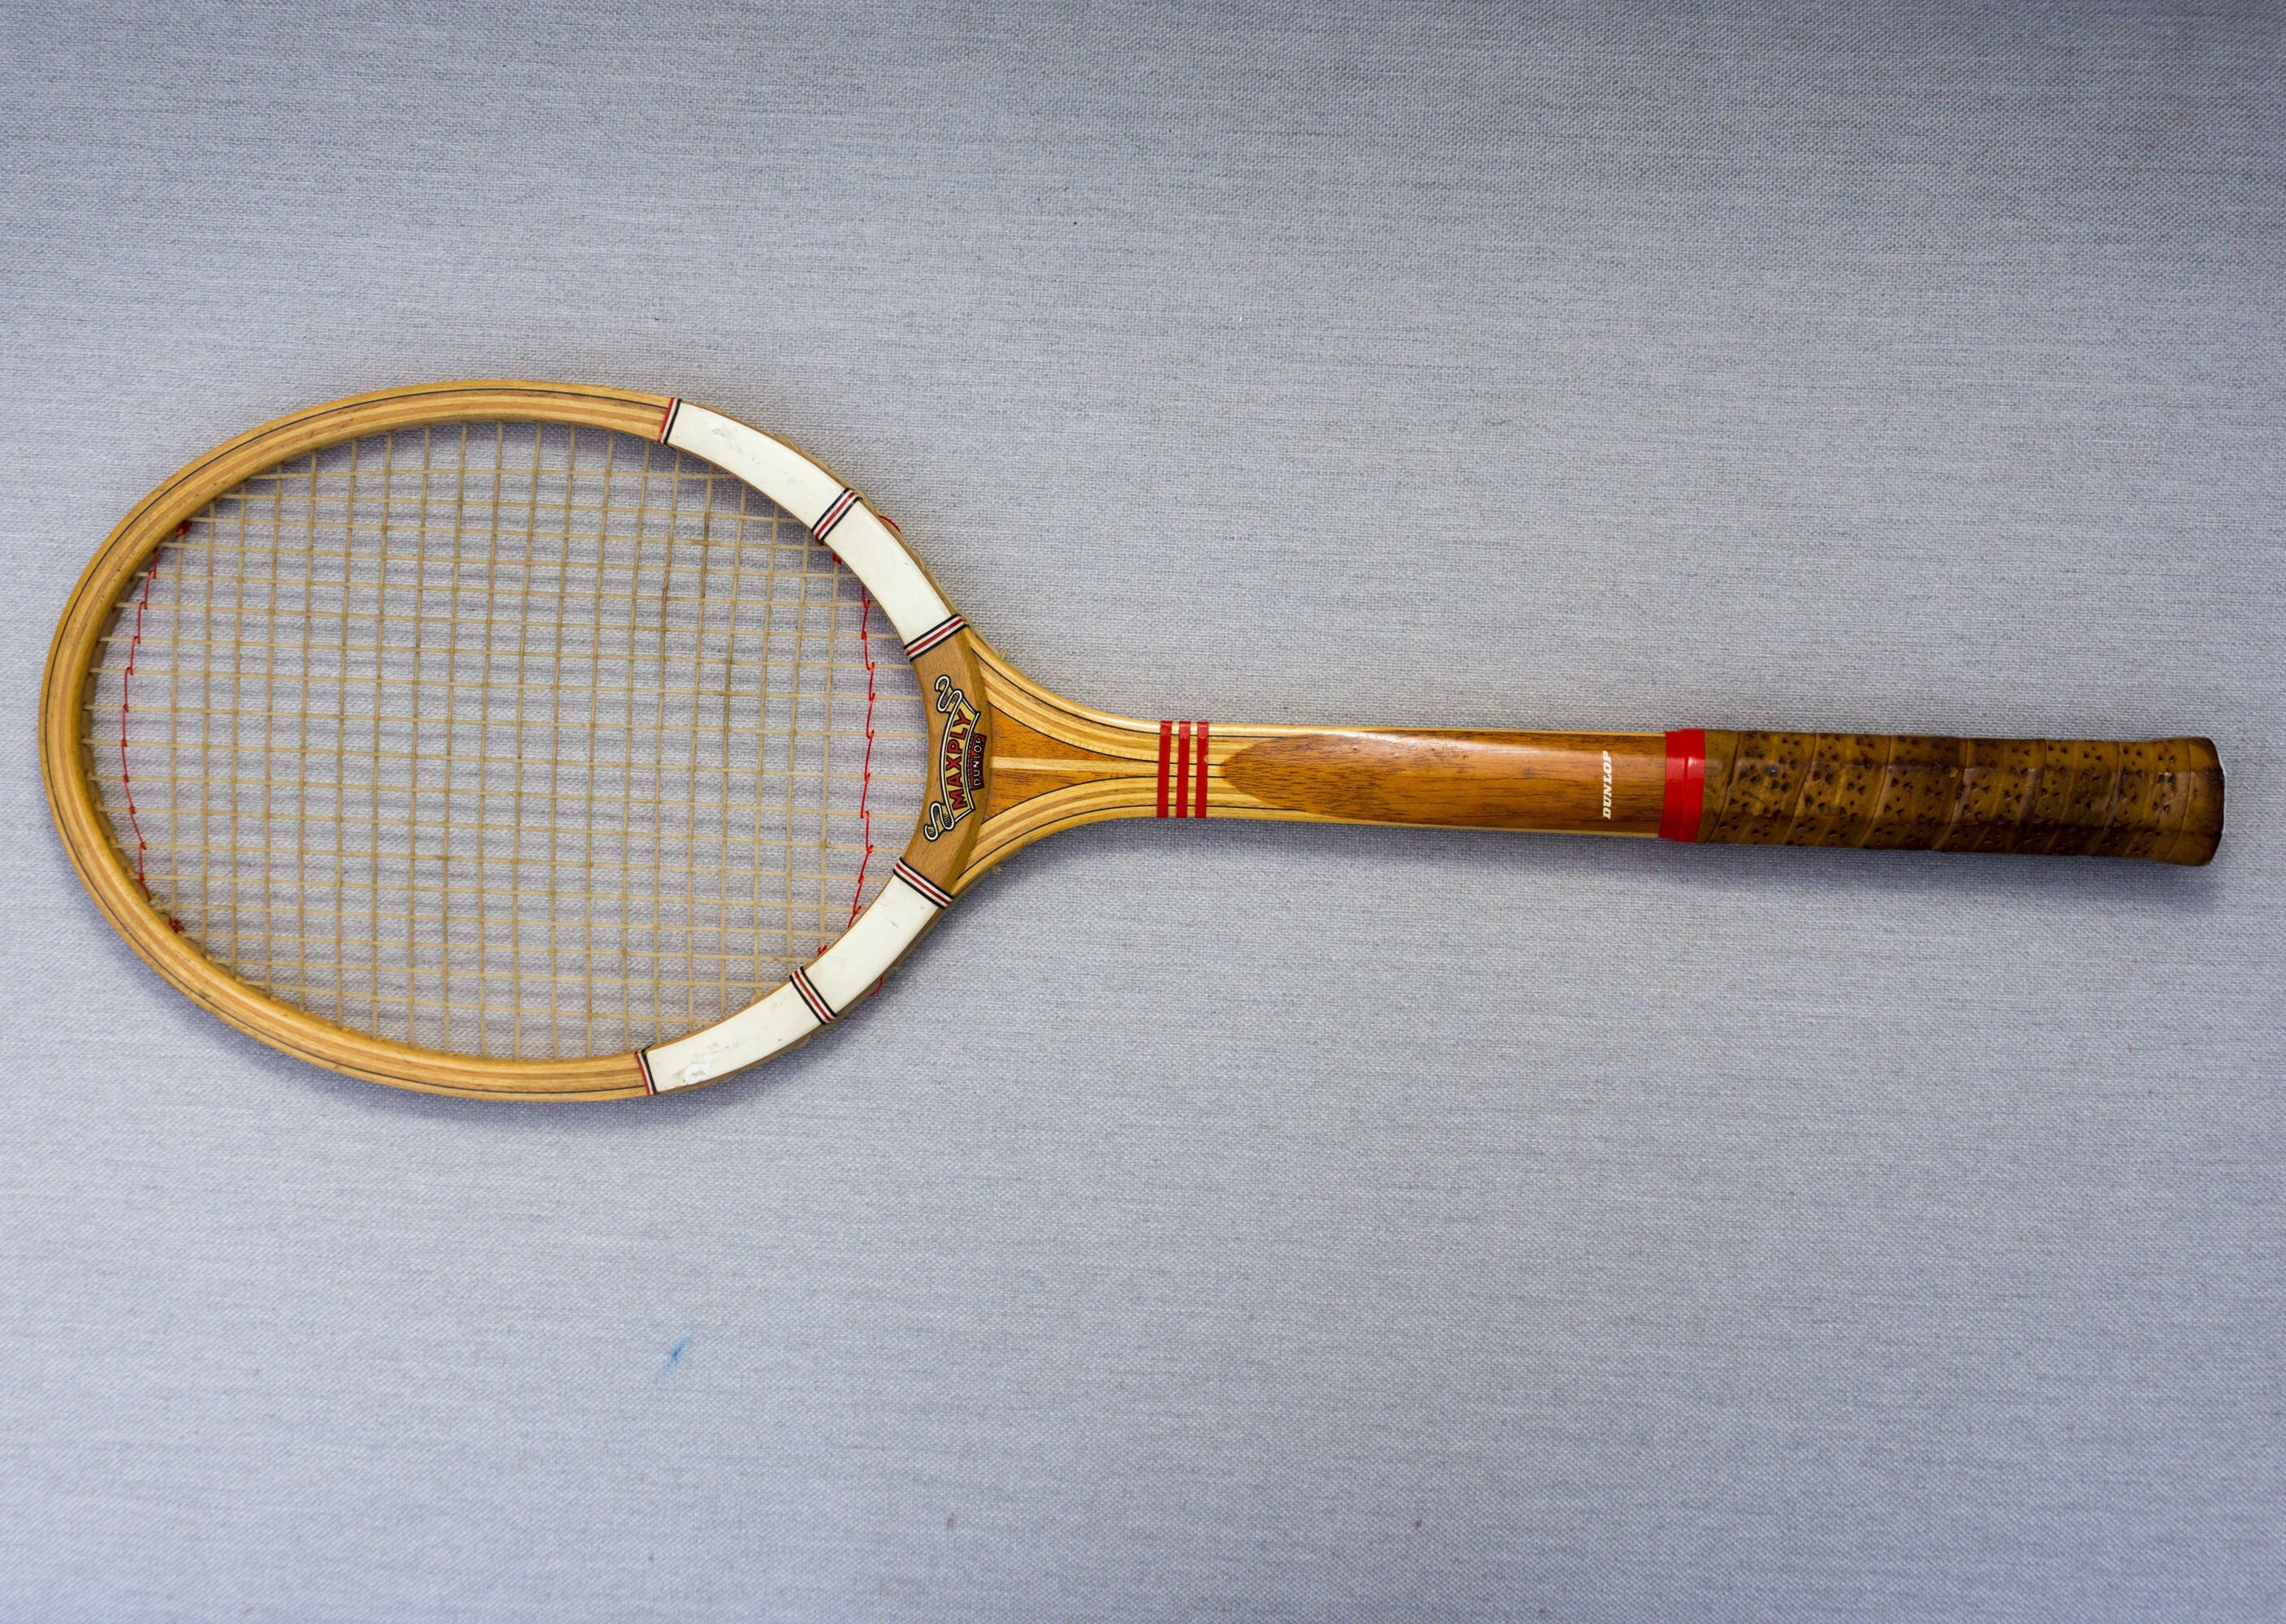 Politiek Onophoudelijk helikopter Dunlop Maxply Vintage Tennis Racket - Etsy